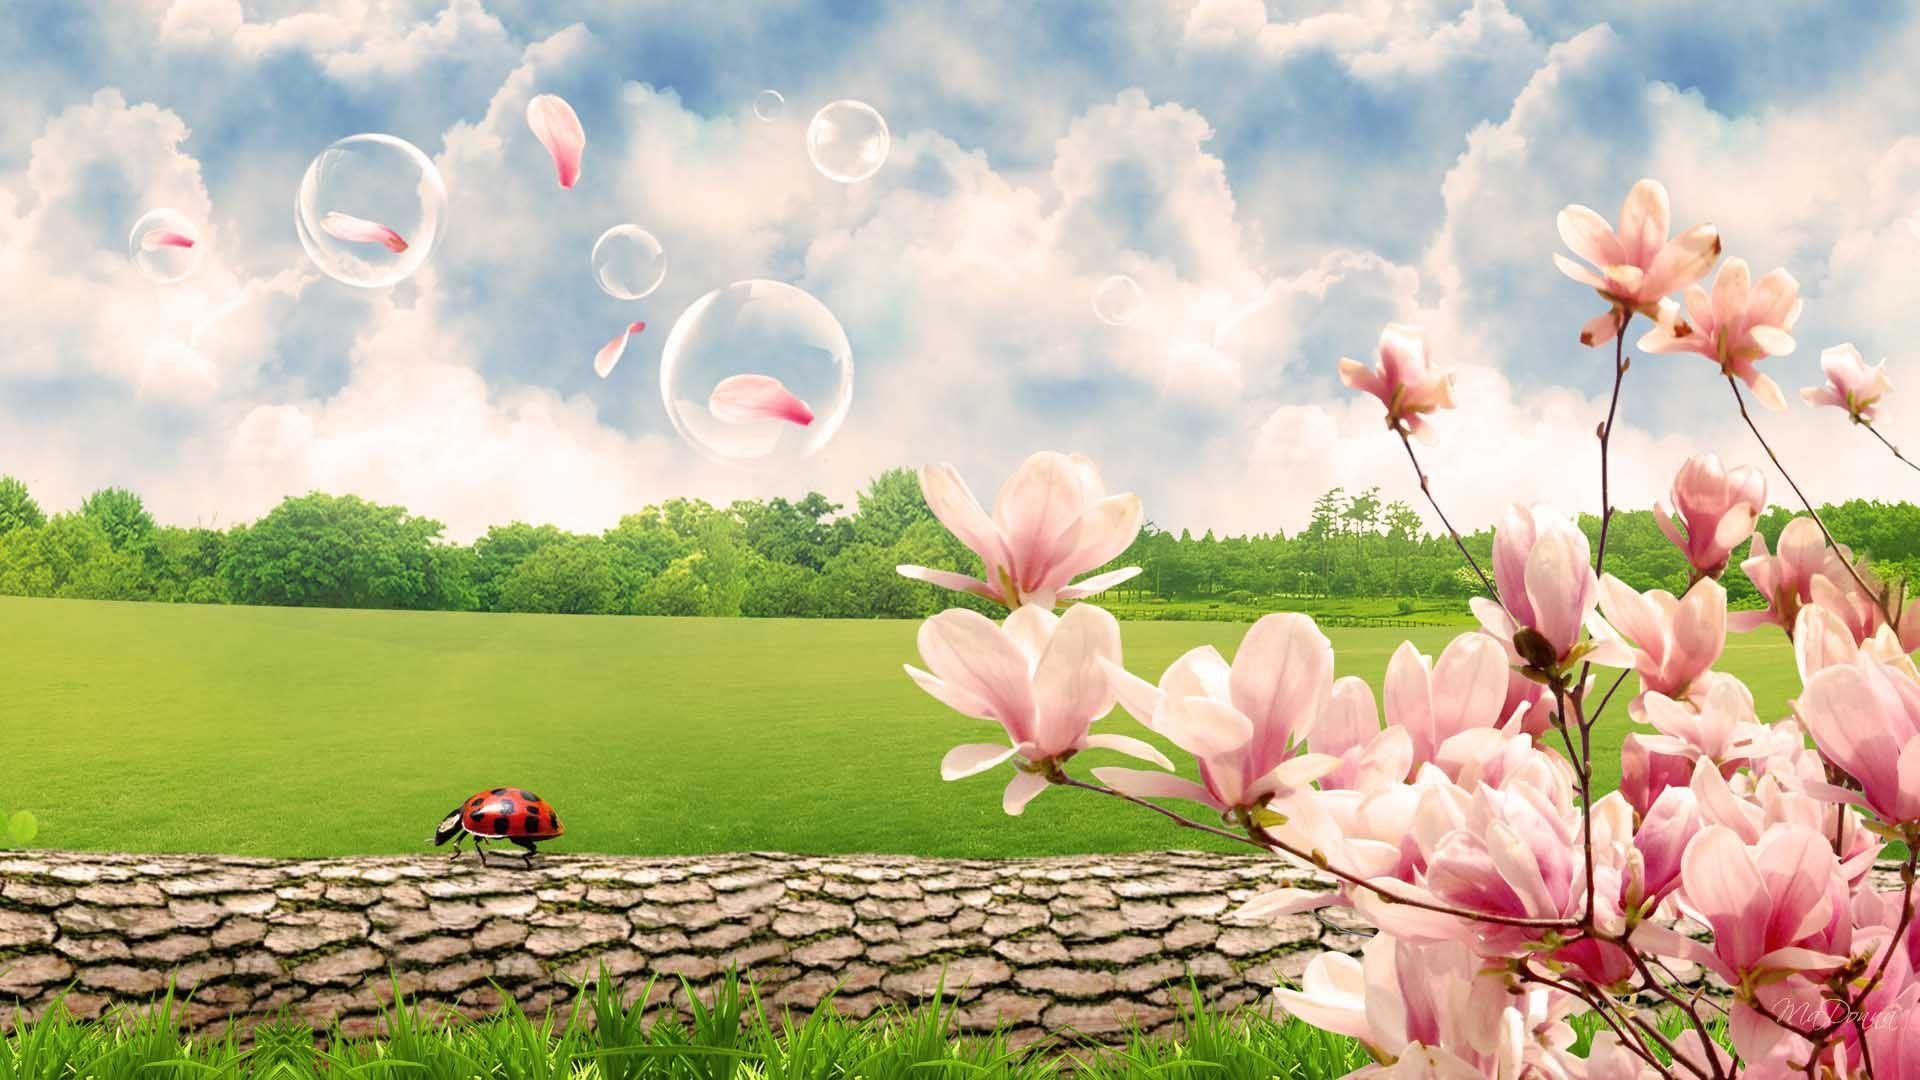 Beautiful Nature Spring Scenes Wallpaper HD. Wallpaper 4k